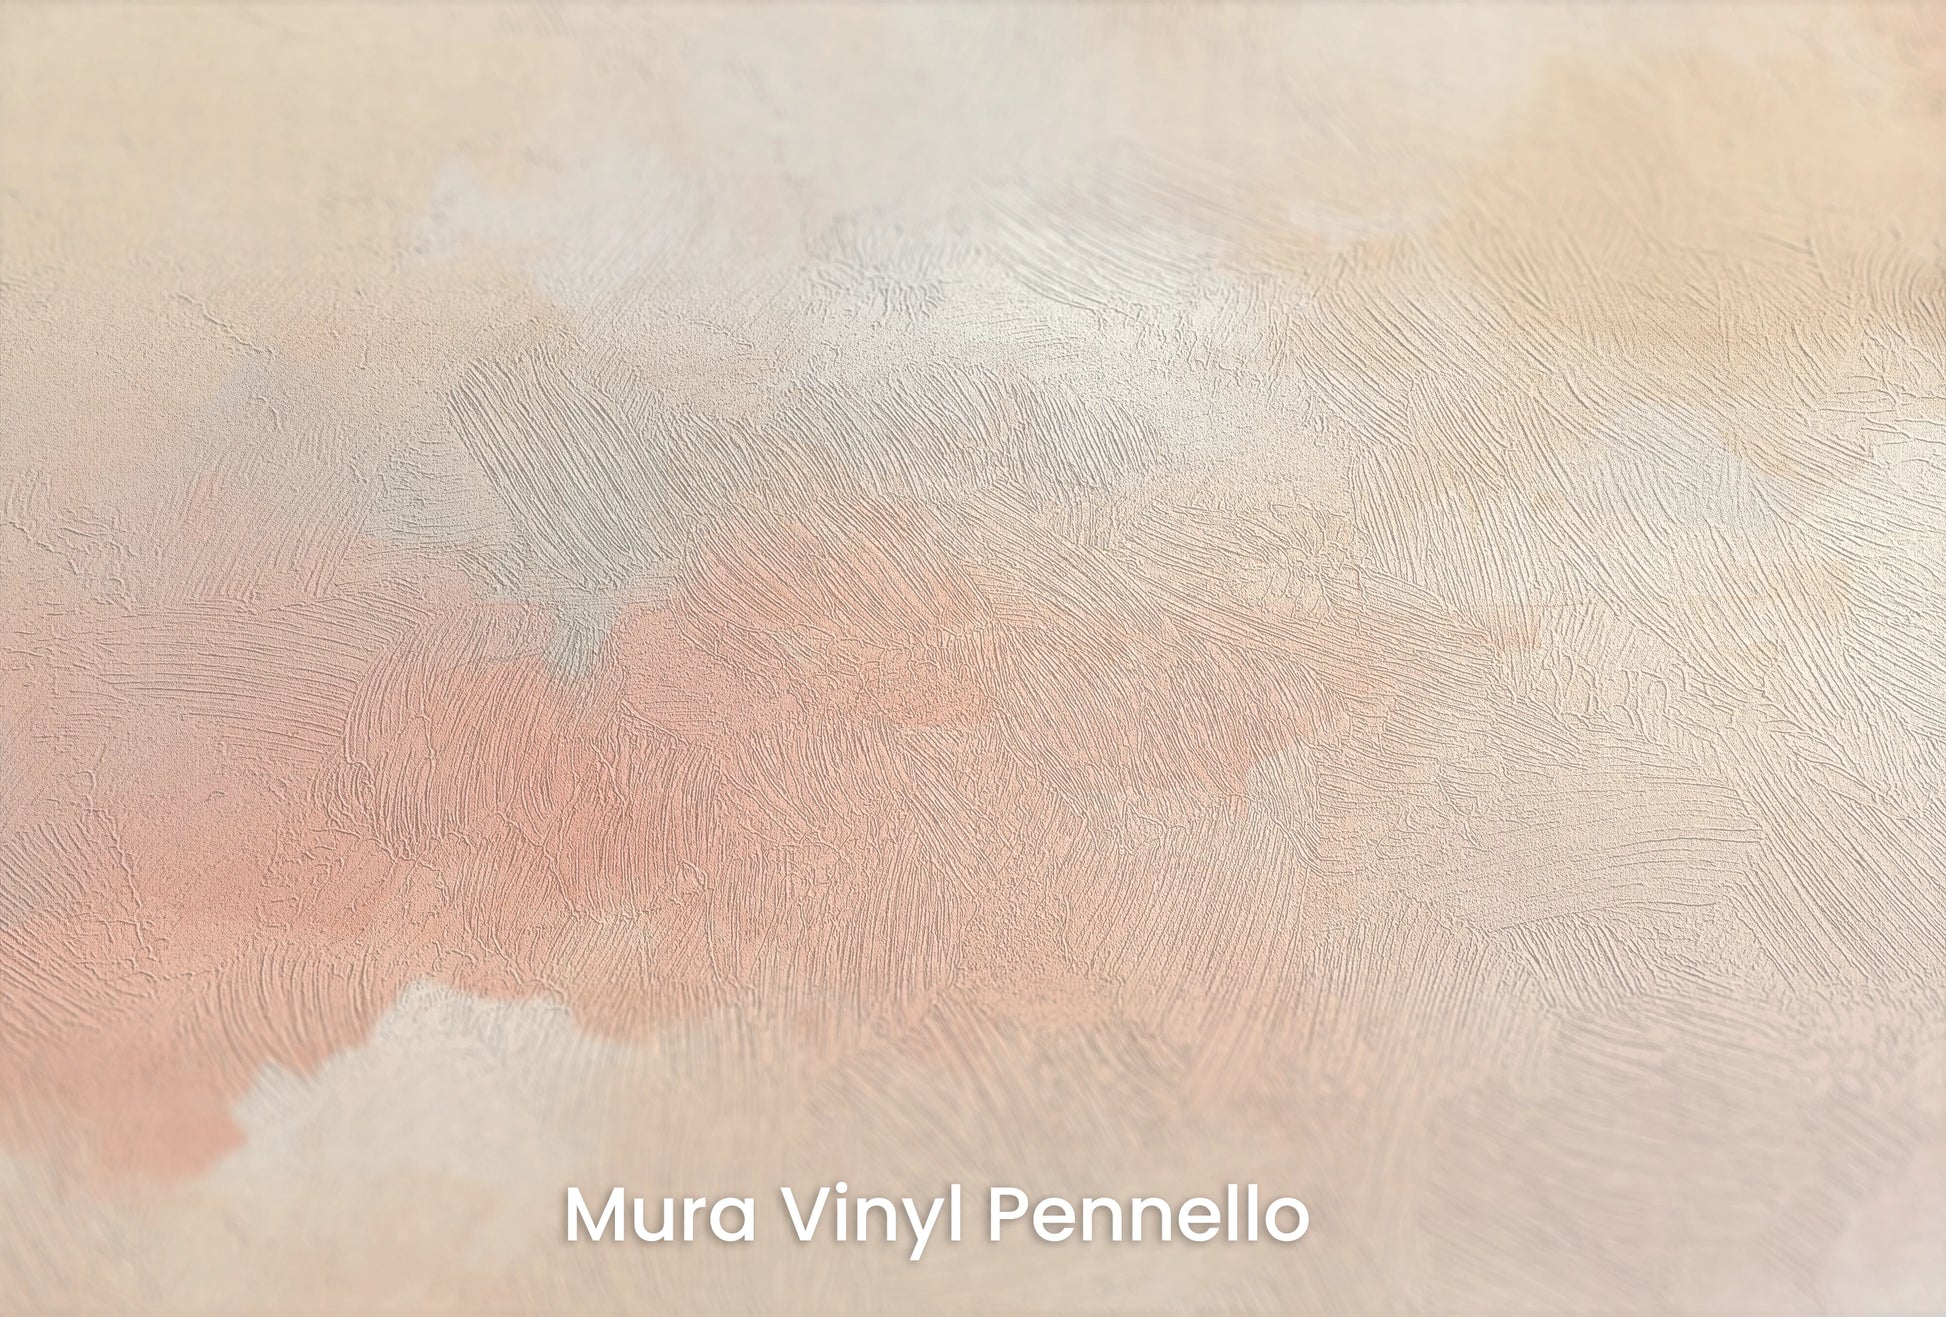 Zbliżenie na artystyczną fototapetę o nazwie Cotton Skies na podłożu Mura Vinyl Pennello - faktura pociągnięć pędzla malarskiego.